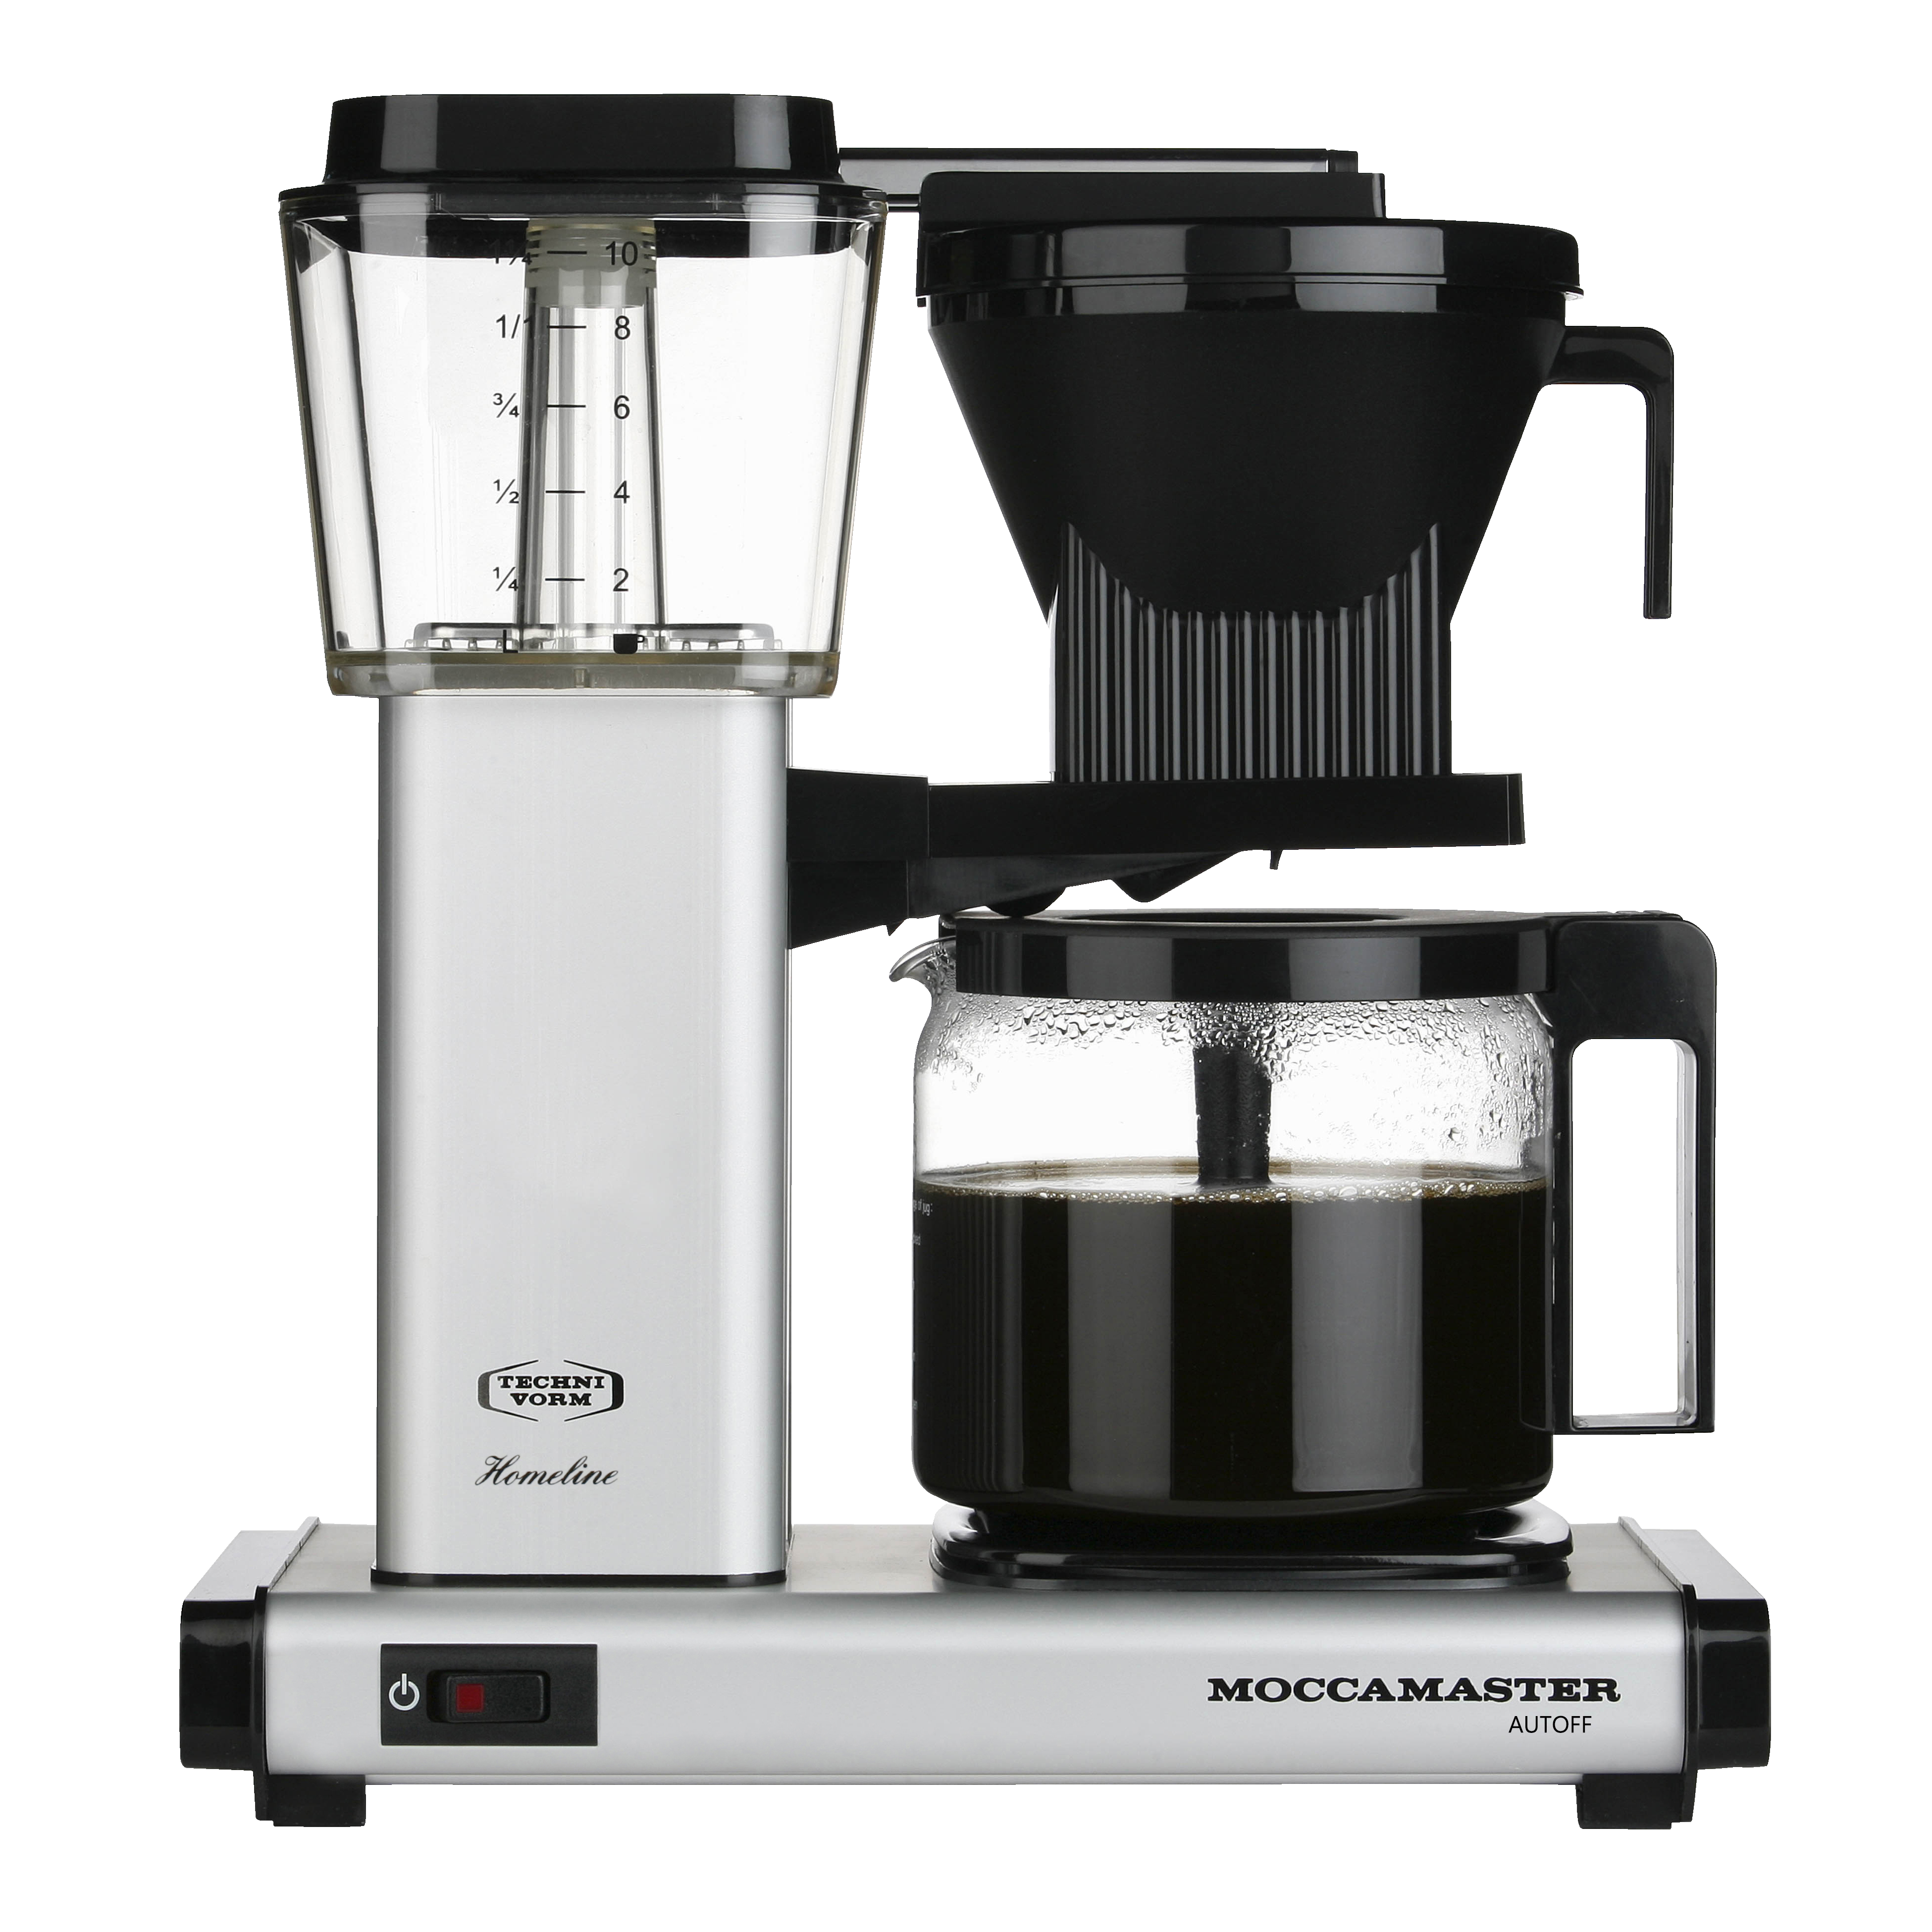 Moccamaster kaffemaskine HBG741AOMS - grå - Kaffemaskine - Elgiganten